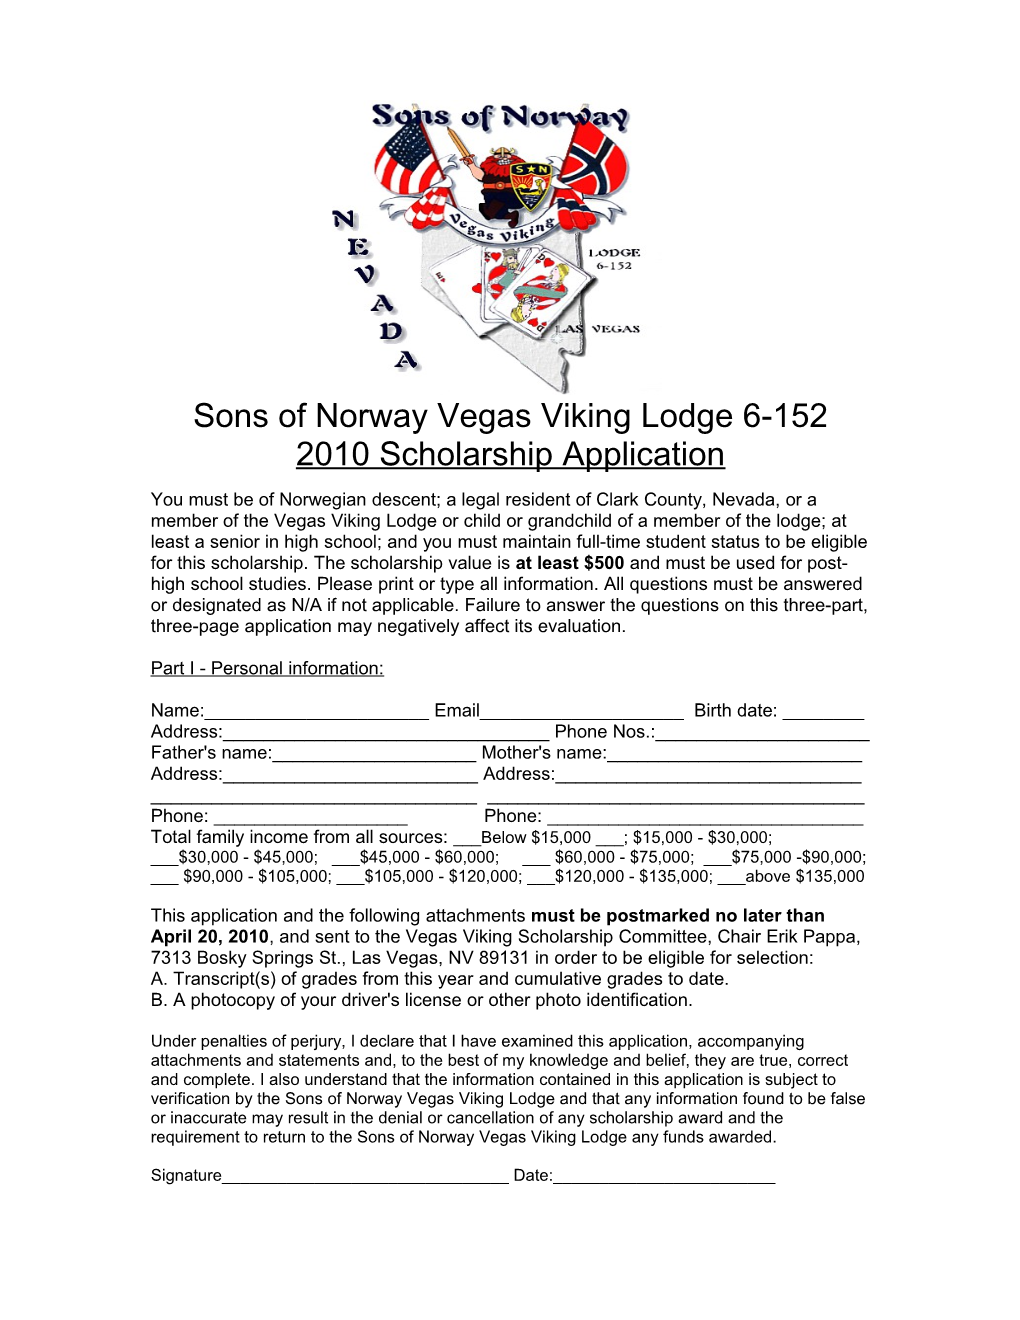 Sons of Norway Vegas Viking Lodge 6-152